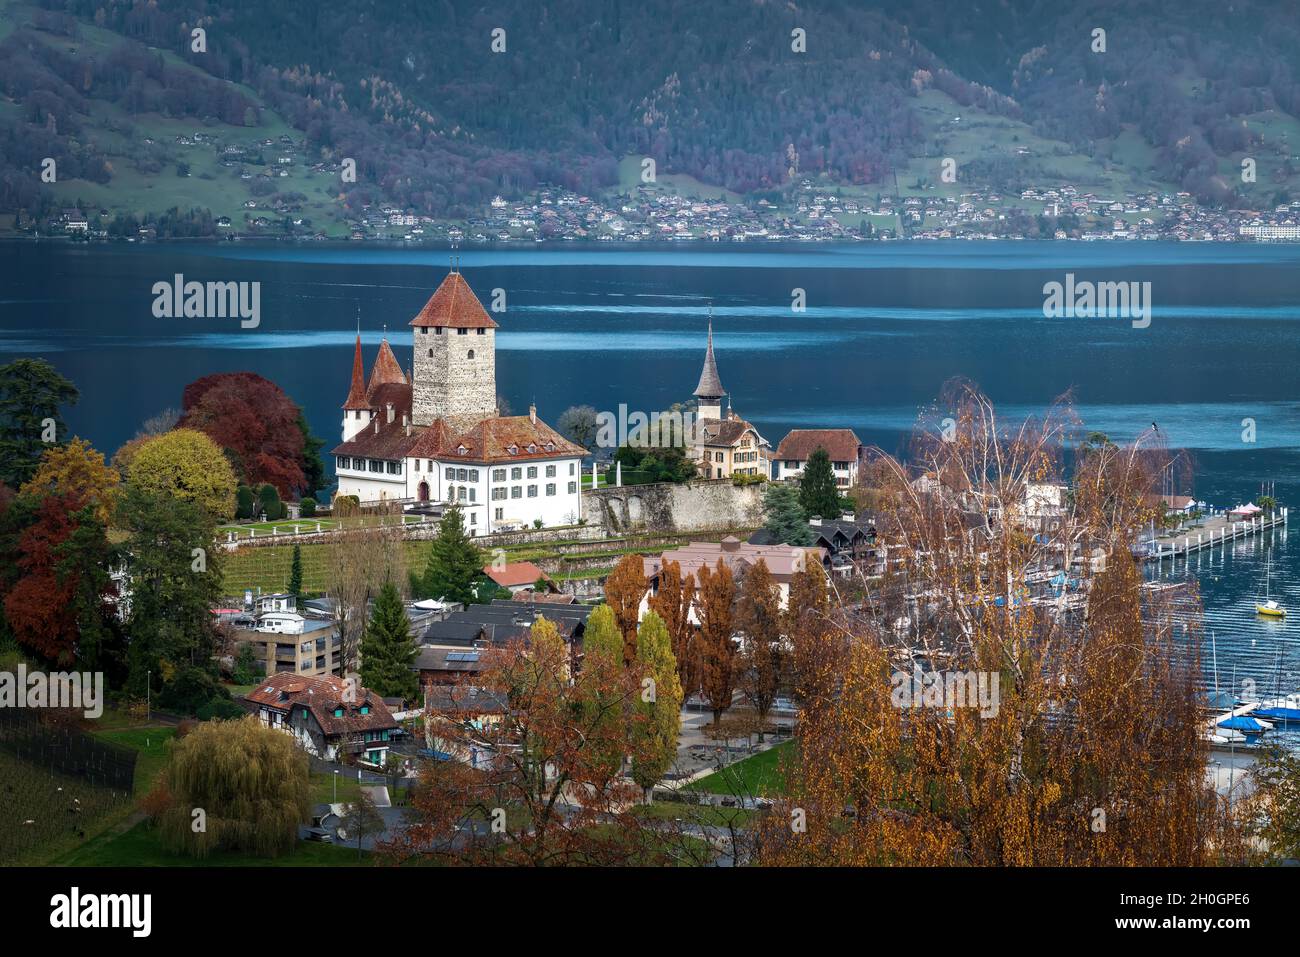 Luftaufnahme von Schloss Spiez und Schlosskirche am Thunersee - Spiez, Schweiz Stockfoto